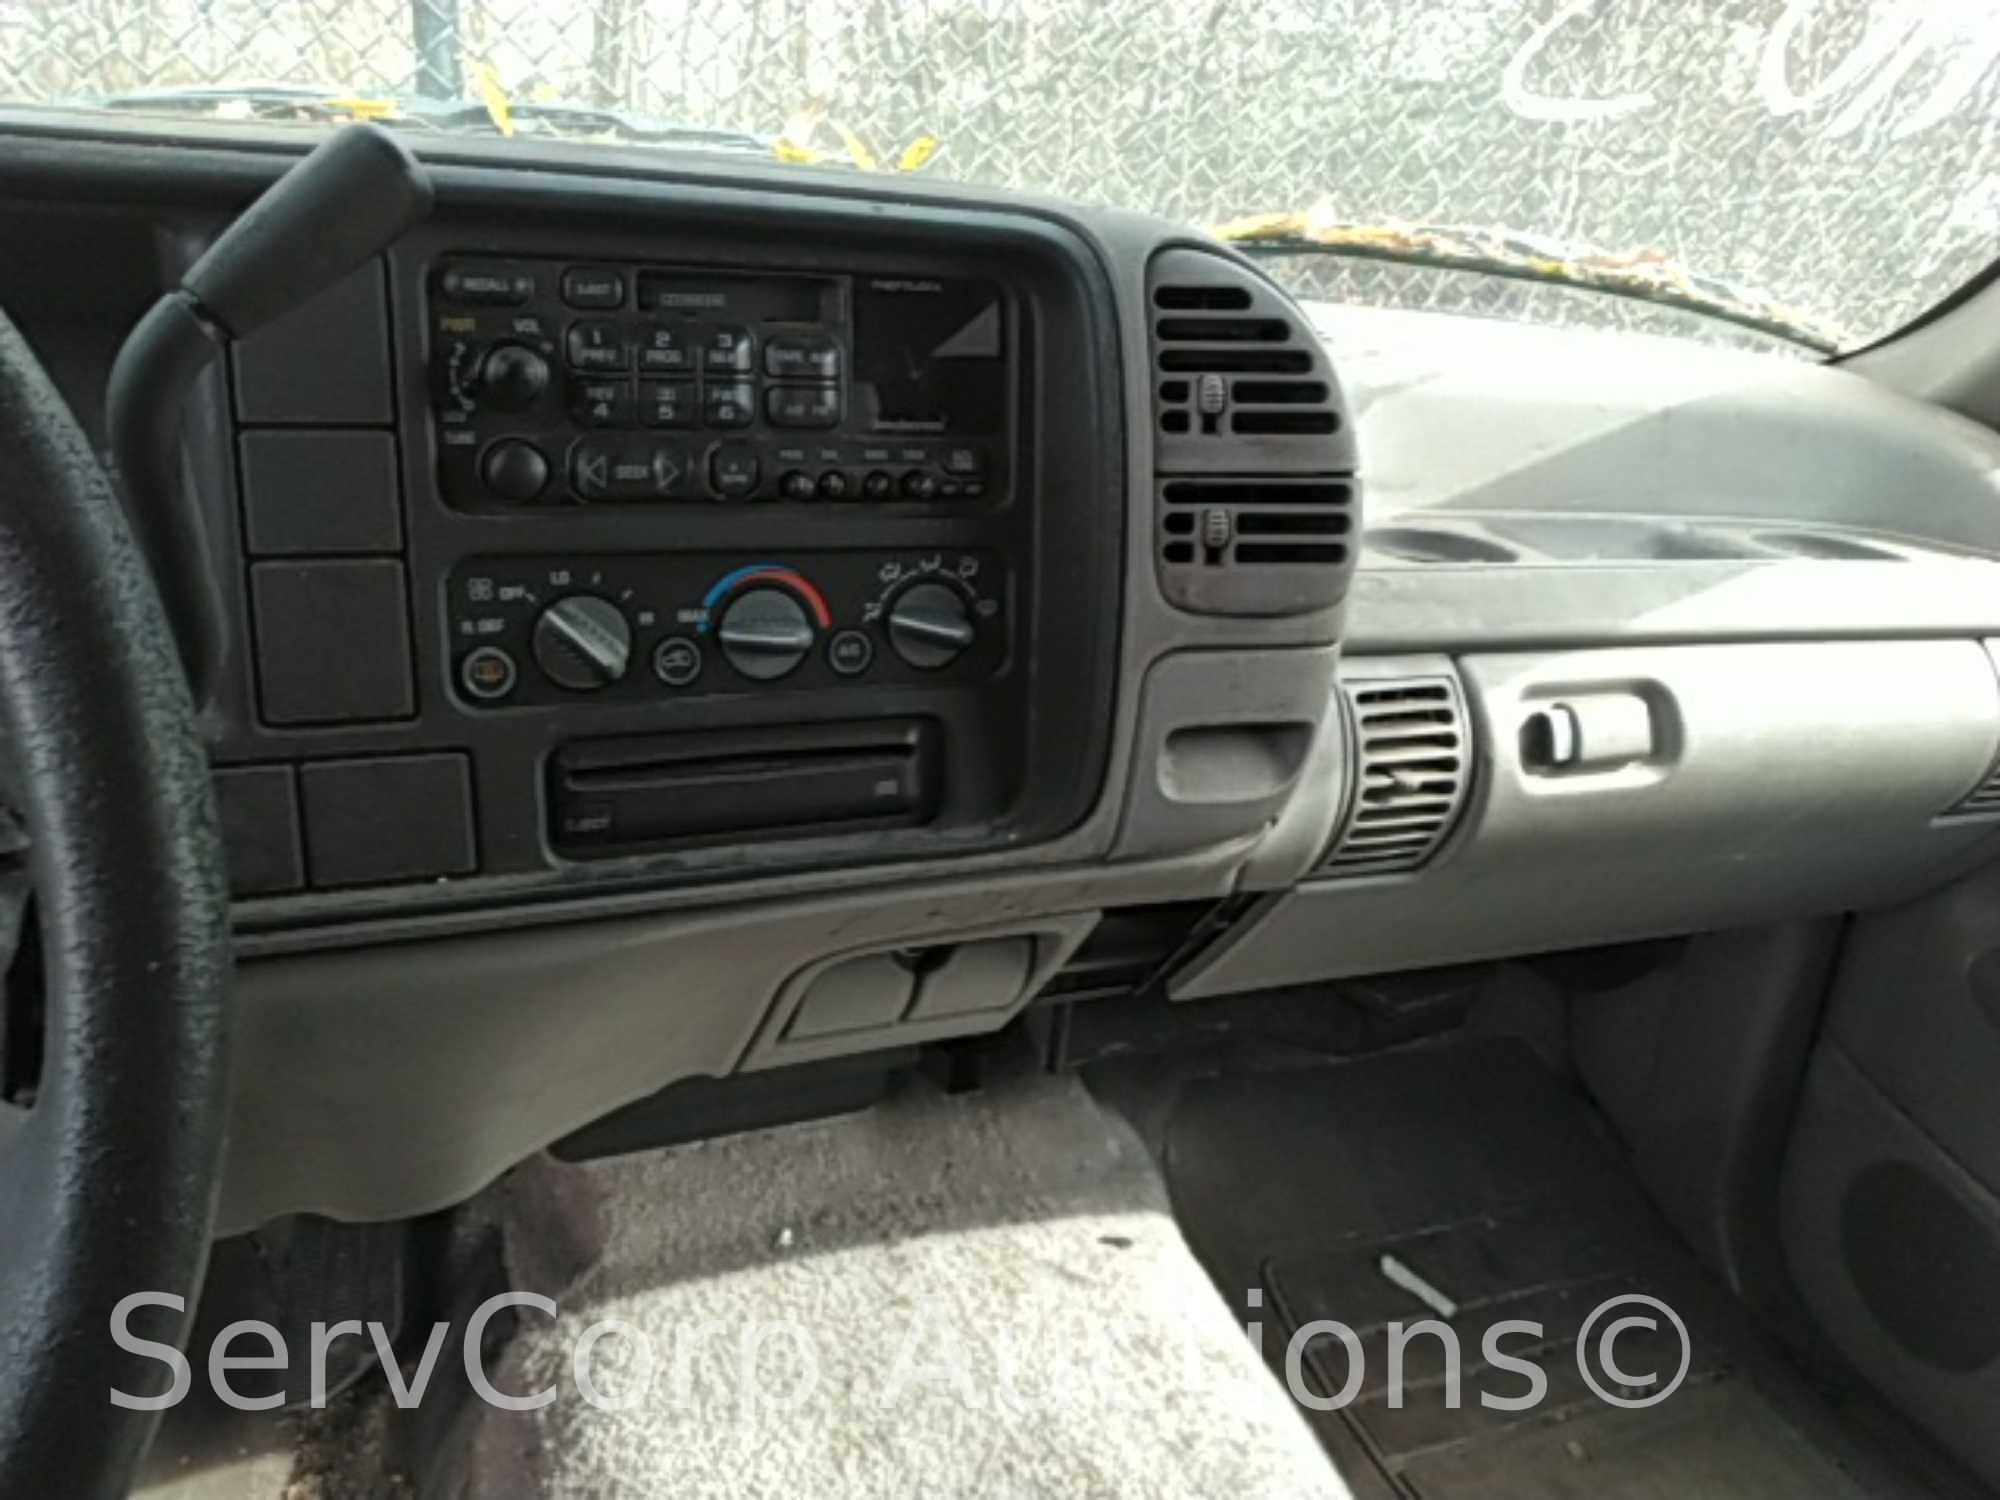 1996 Chevrolet Tahoe Multipurpose Vehicle (MPV), VIN # 1GNEC13R9TJ386954